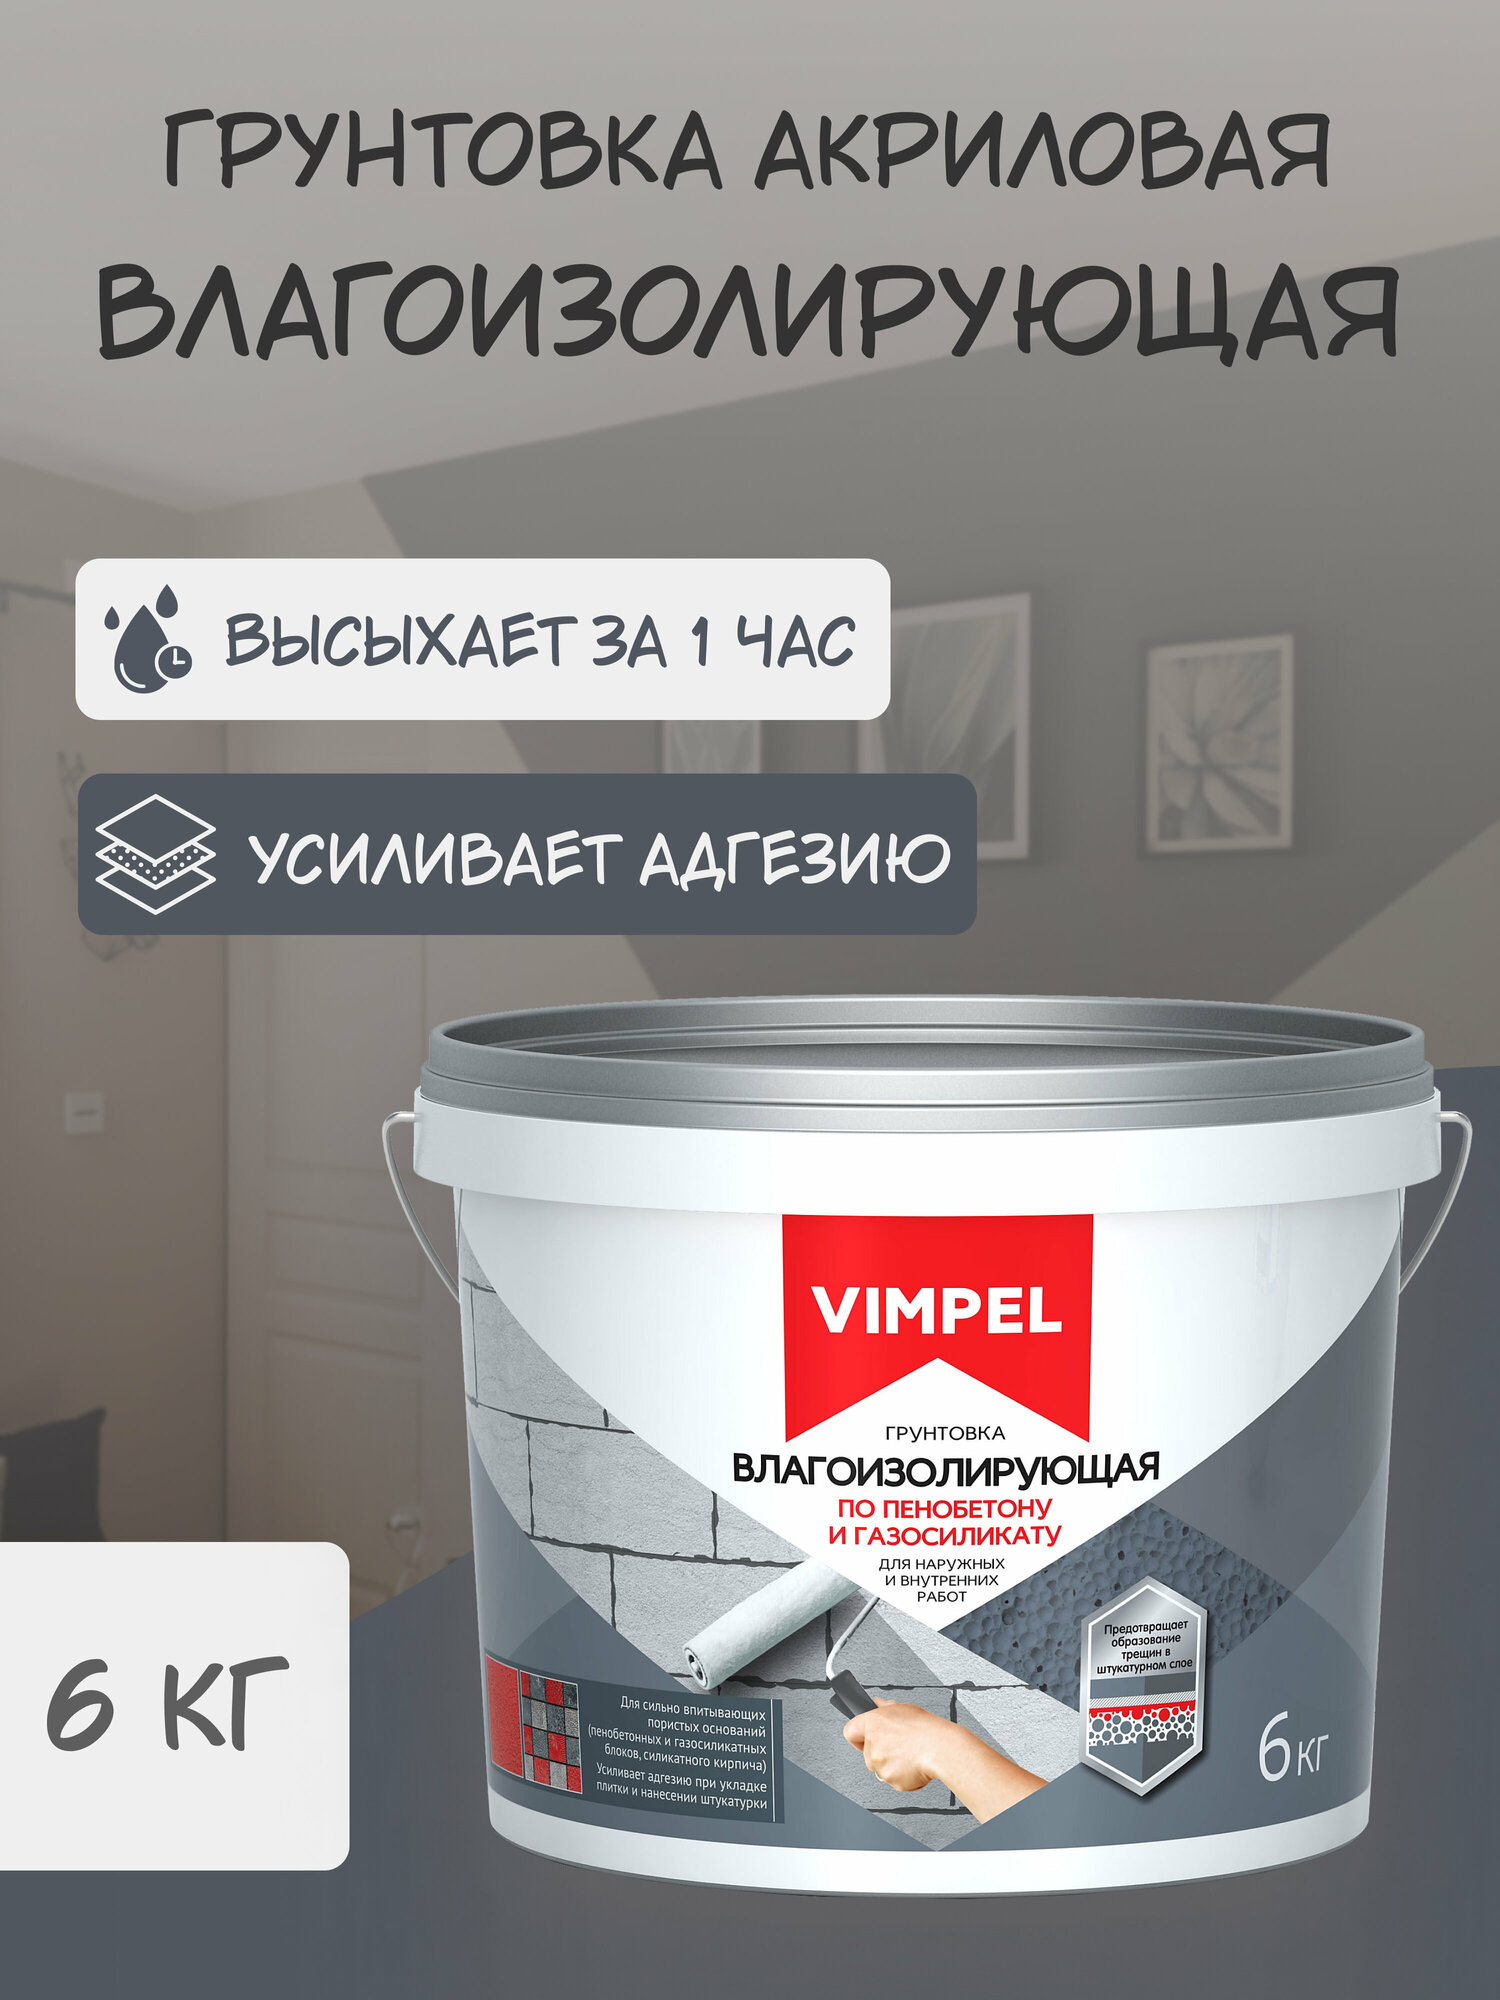 Грунтовка влагоизолирующая по пенобетону и газосиликату "VIMPEL" , 6 кг